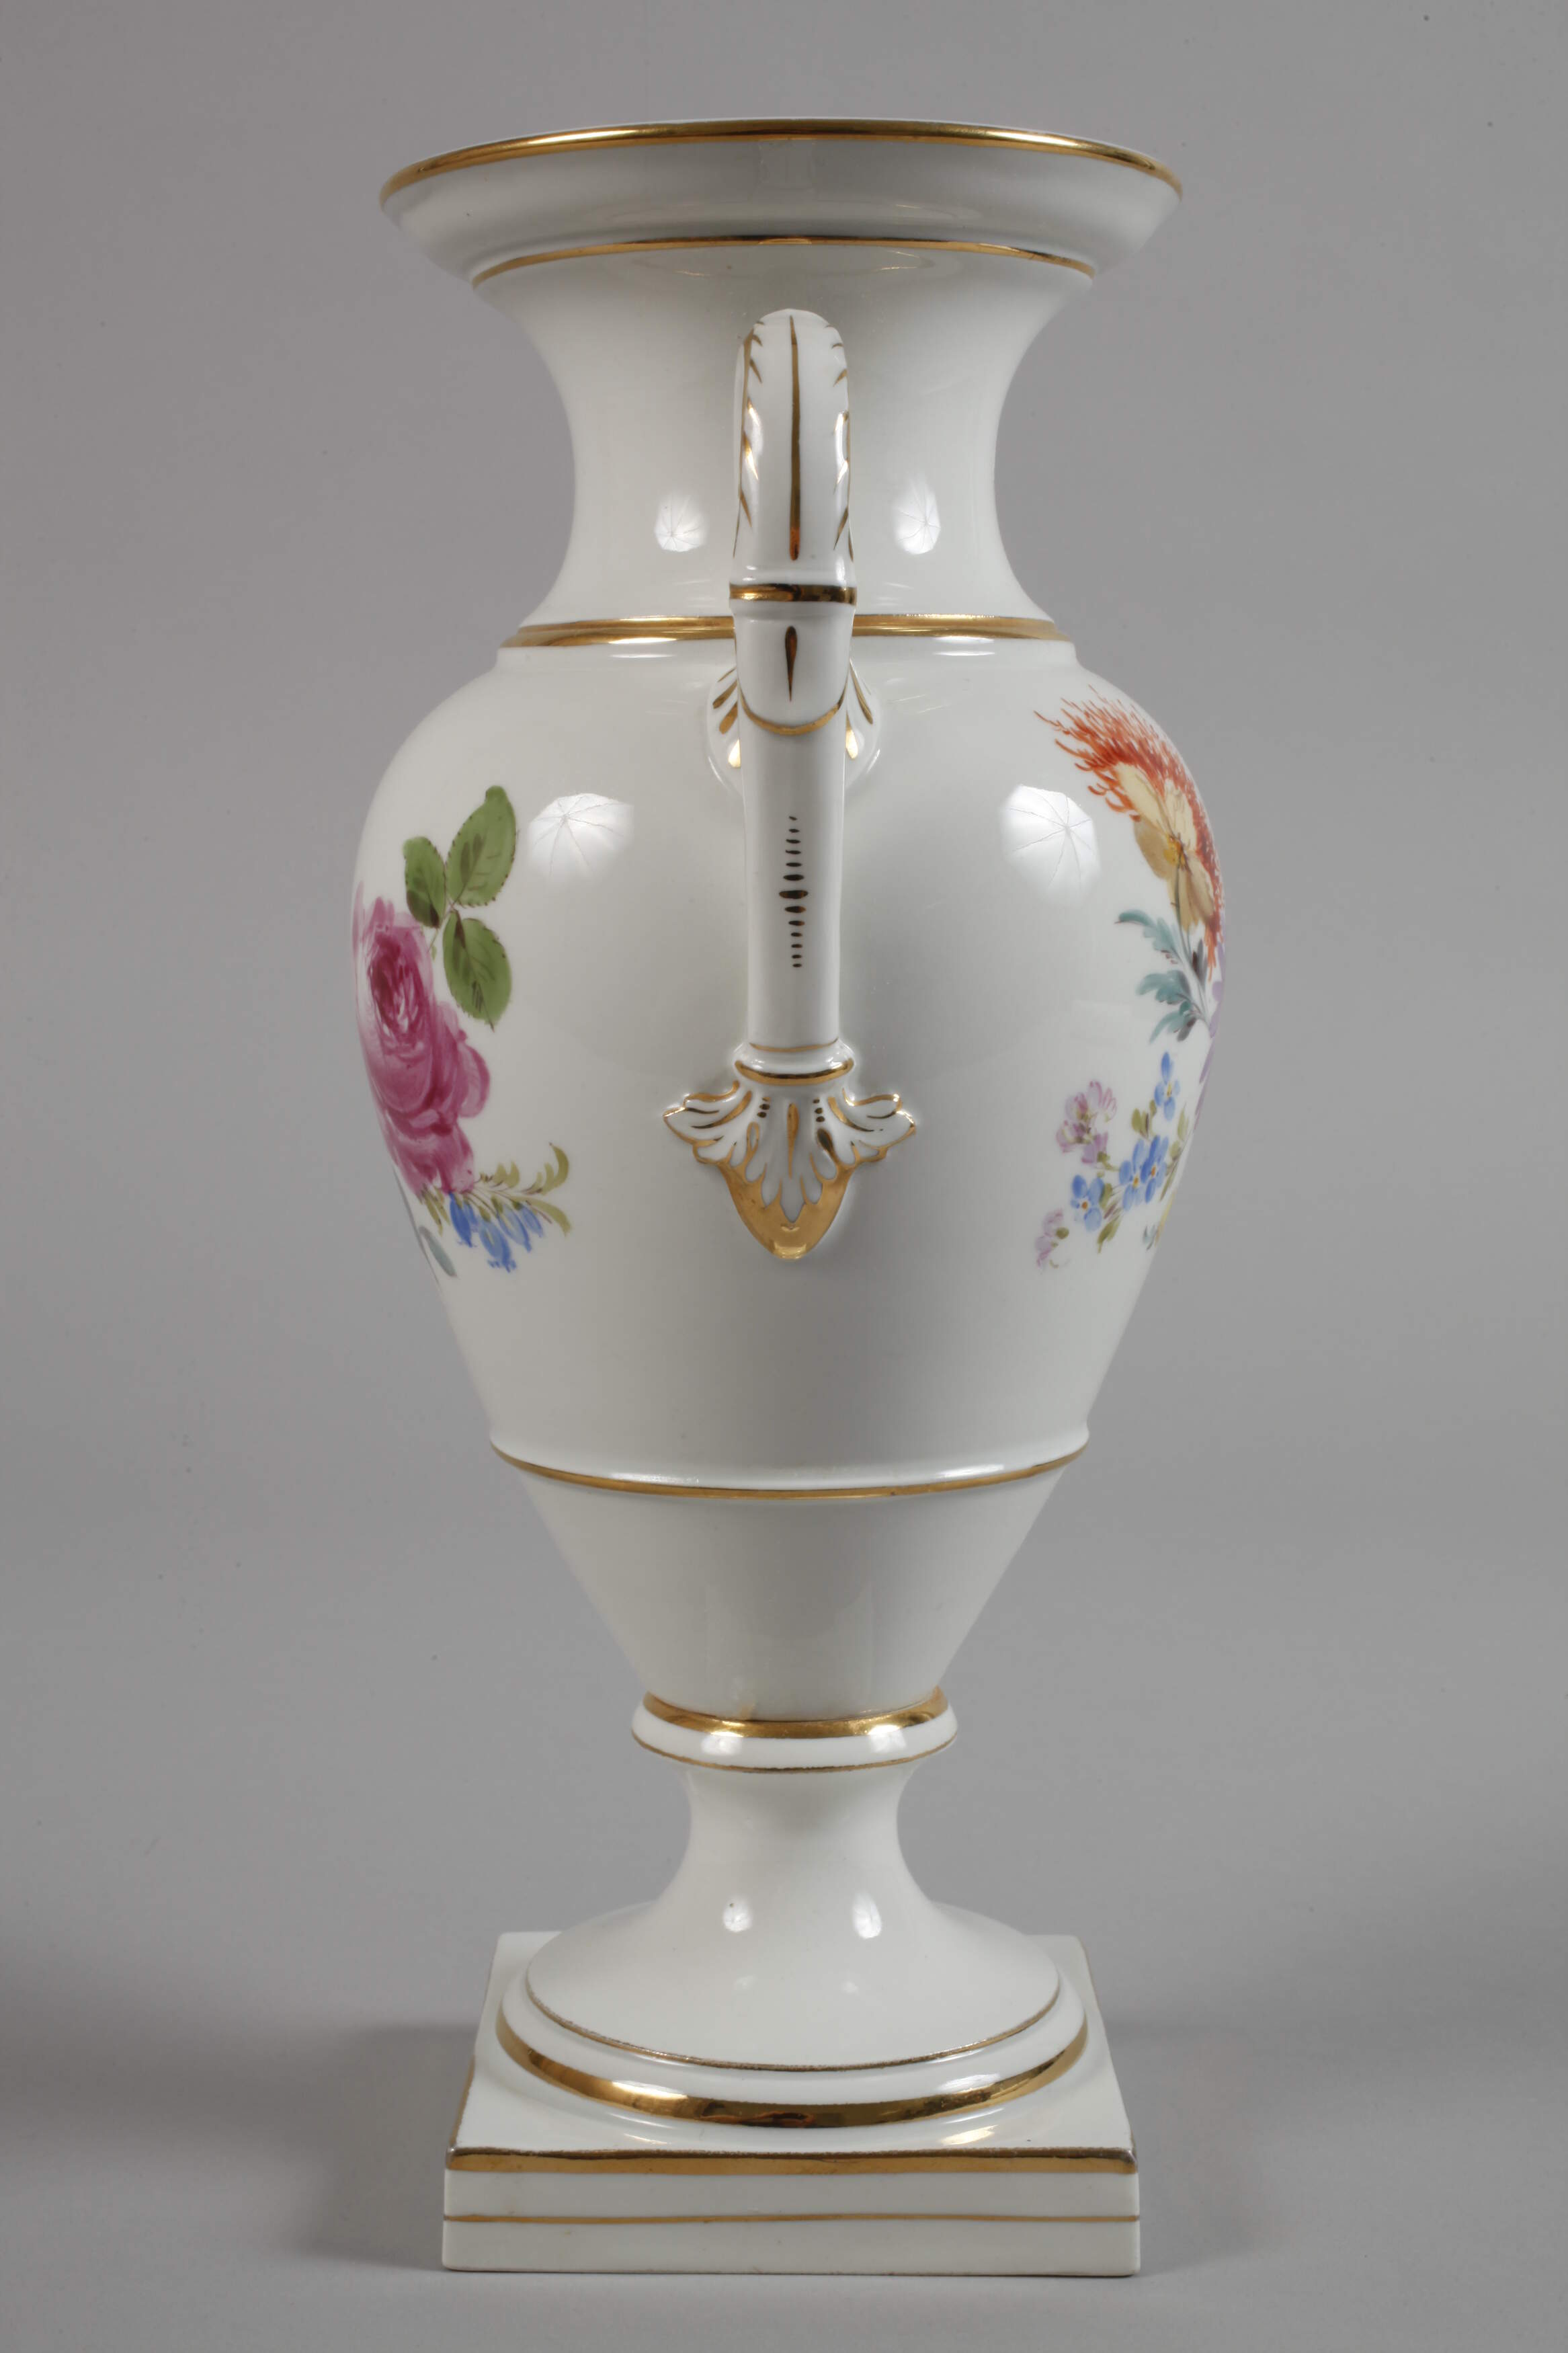 Meissen ceremonial vase "Blumenbukett" - Image 2 of 5